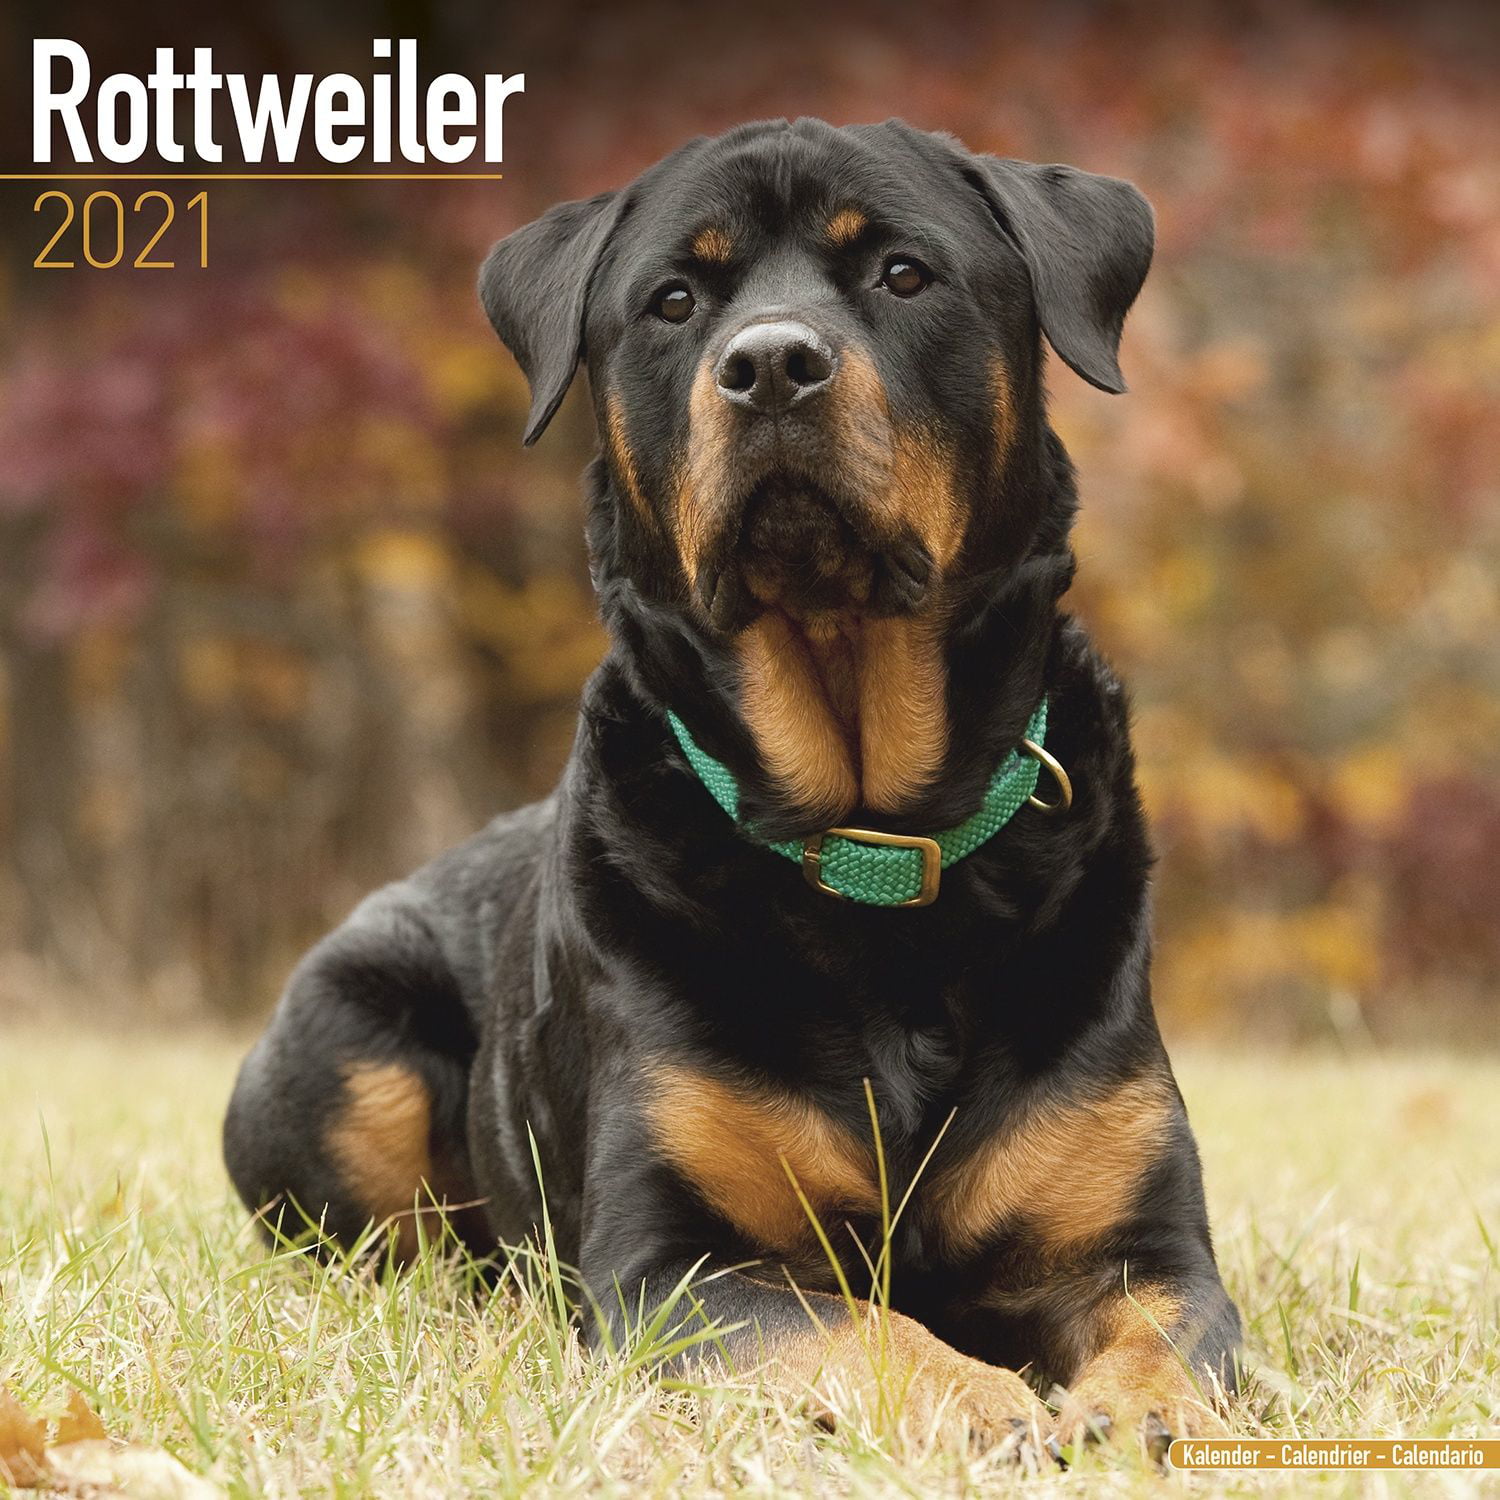 Rottweiler Calendar 2021 - Rottweiler Dog Breed Calendar - Rottweilers